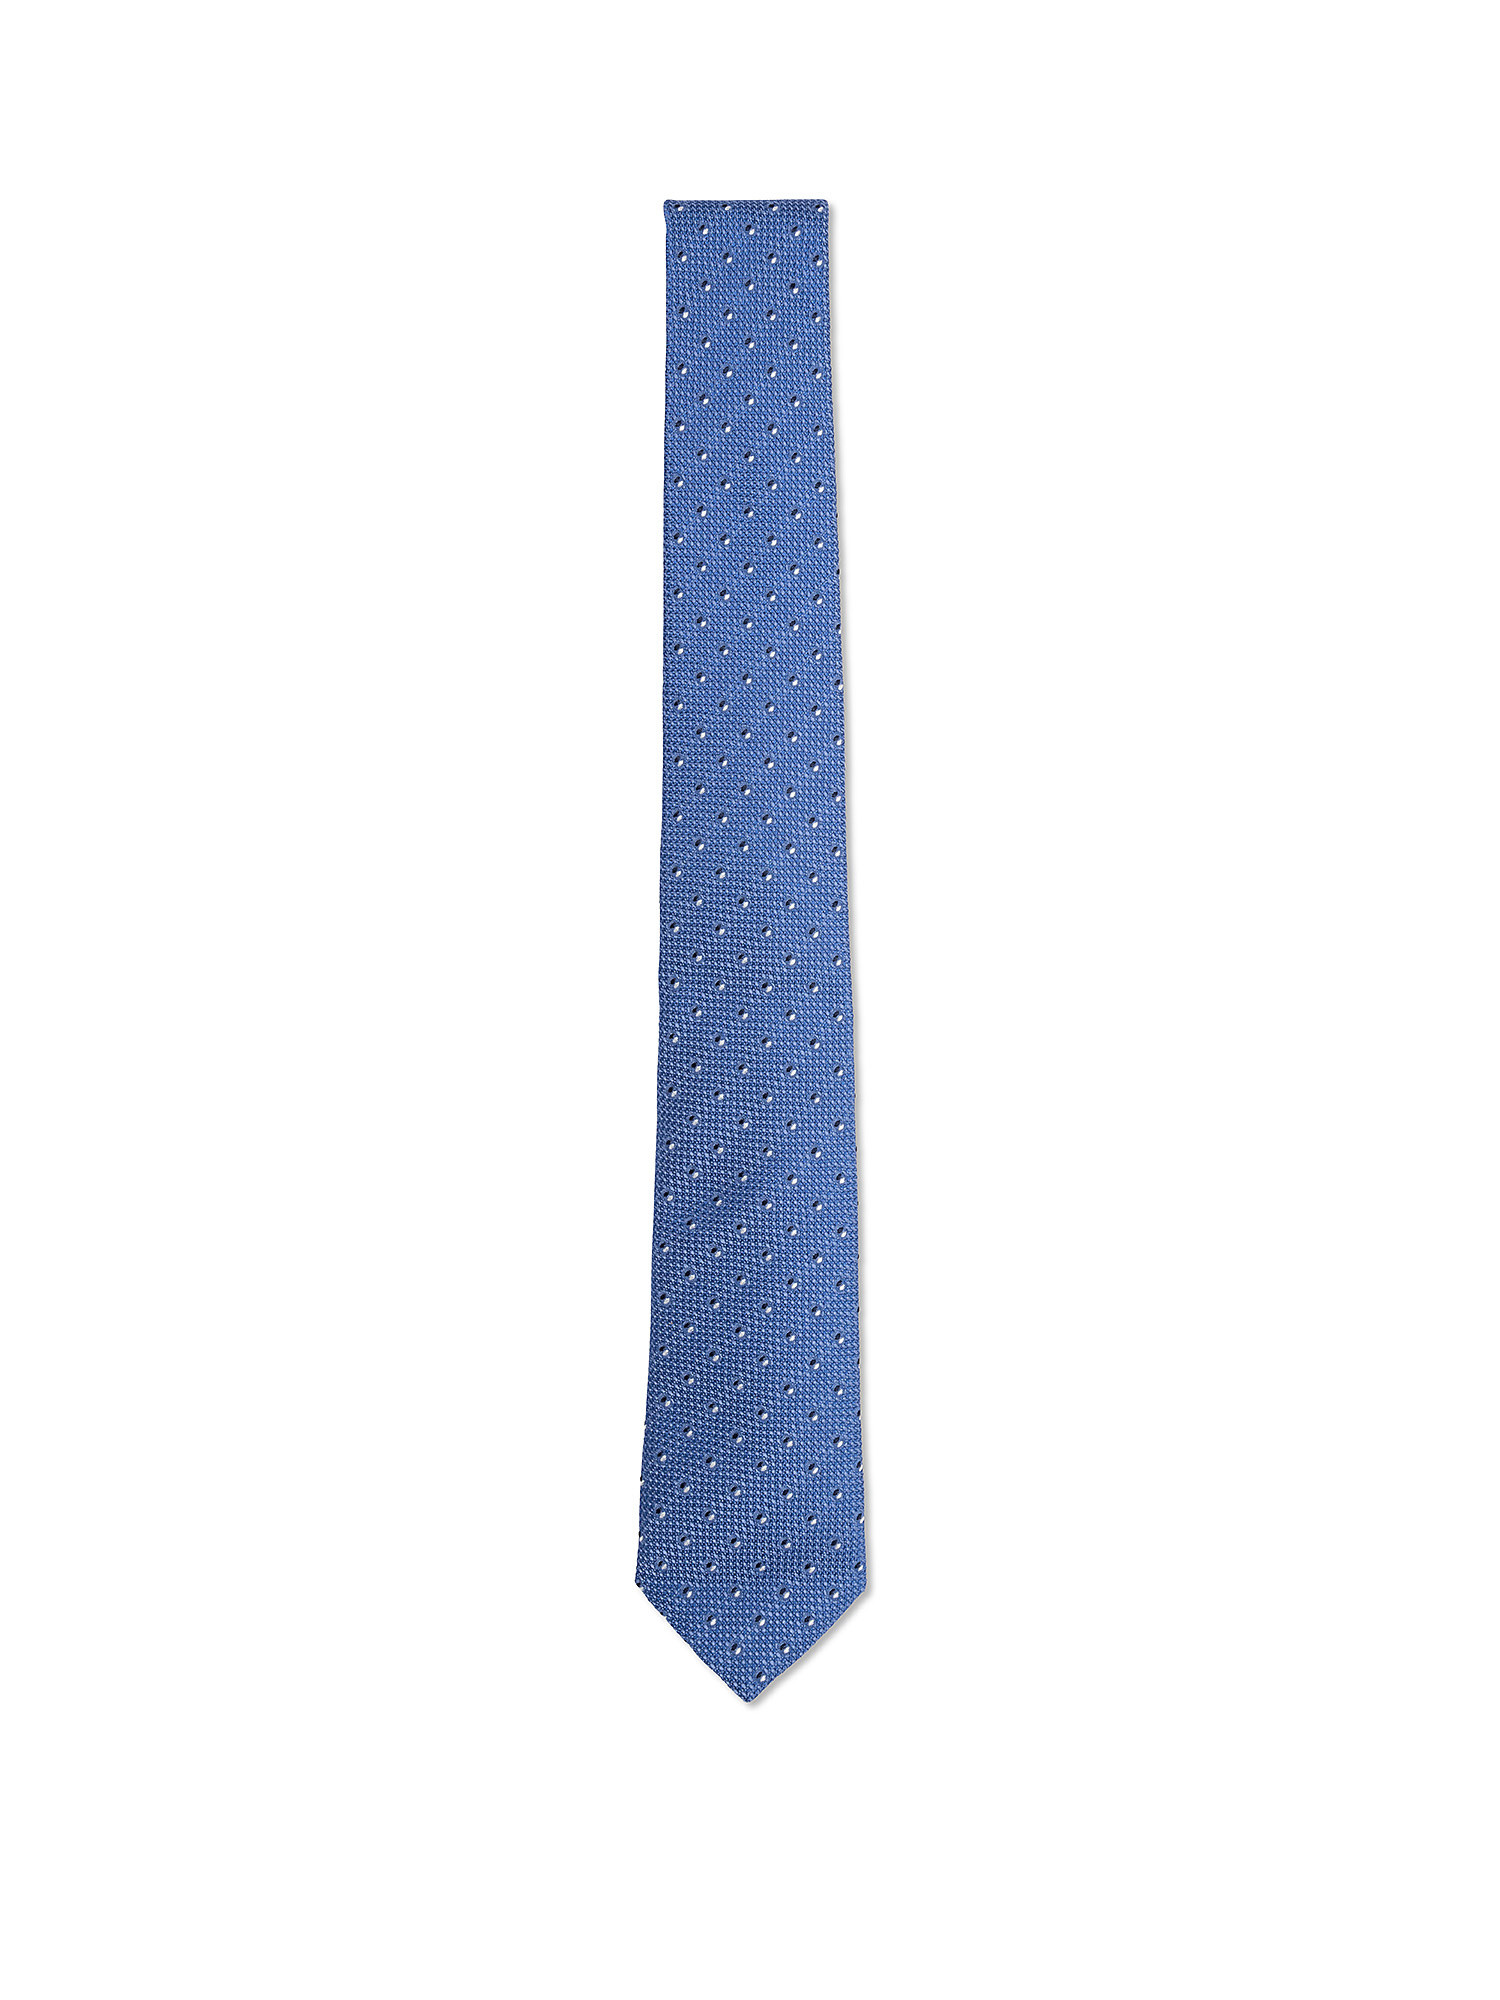 Cravatta in pura seta fantasia, Azzurro celeste, large image number 0